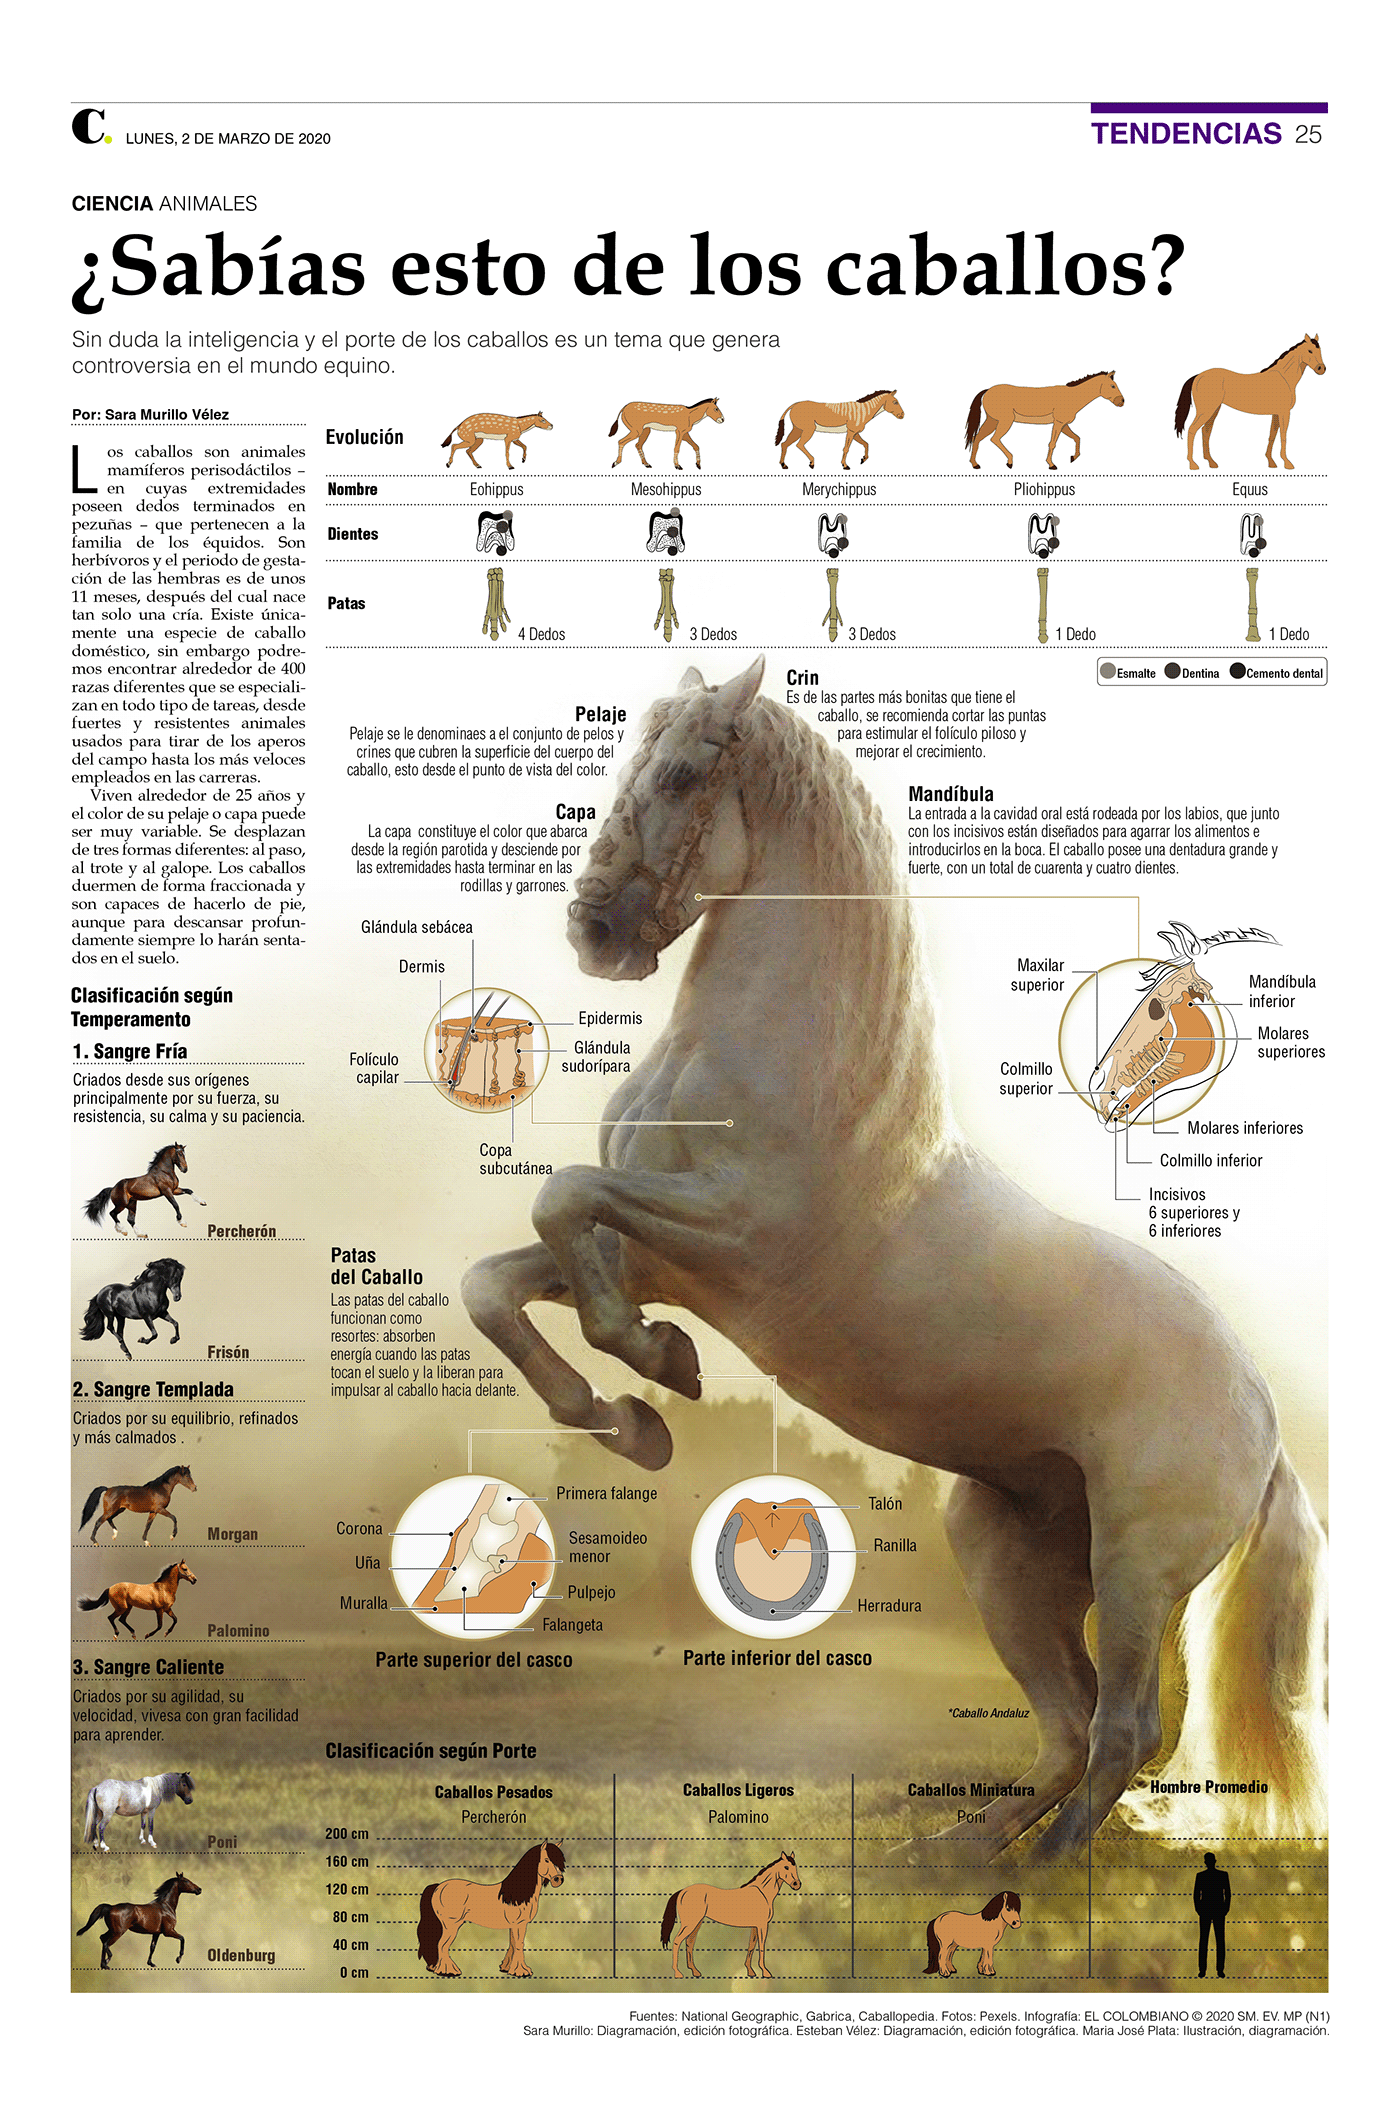 caballos diagramación diagramming horse ilustracion infografia infográficos infographic newspaper periodico